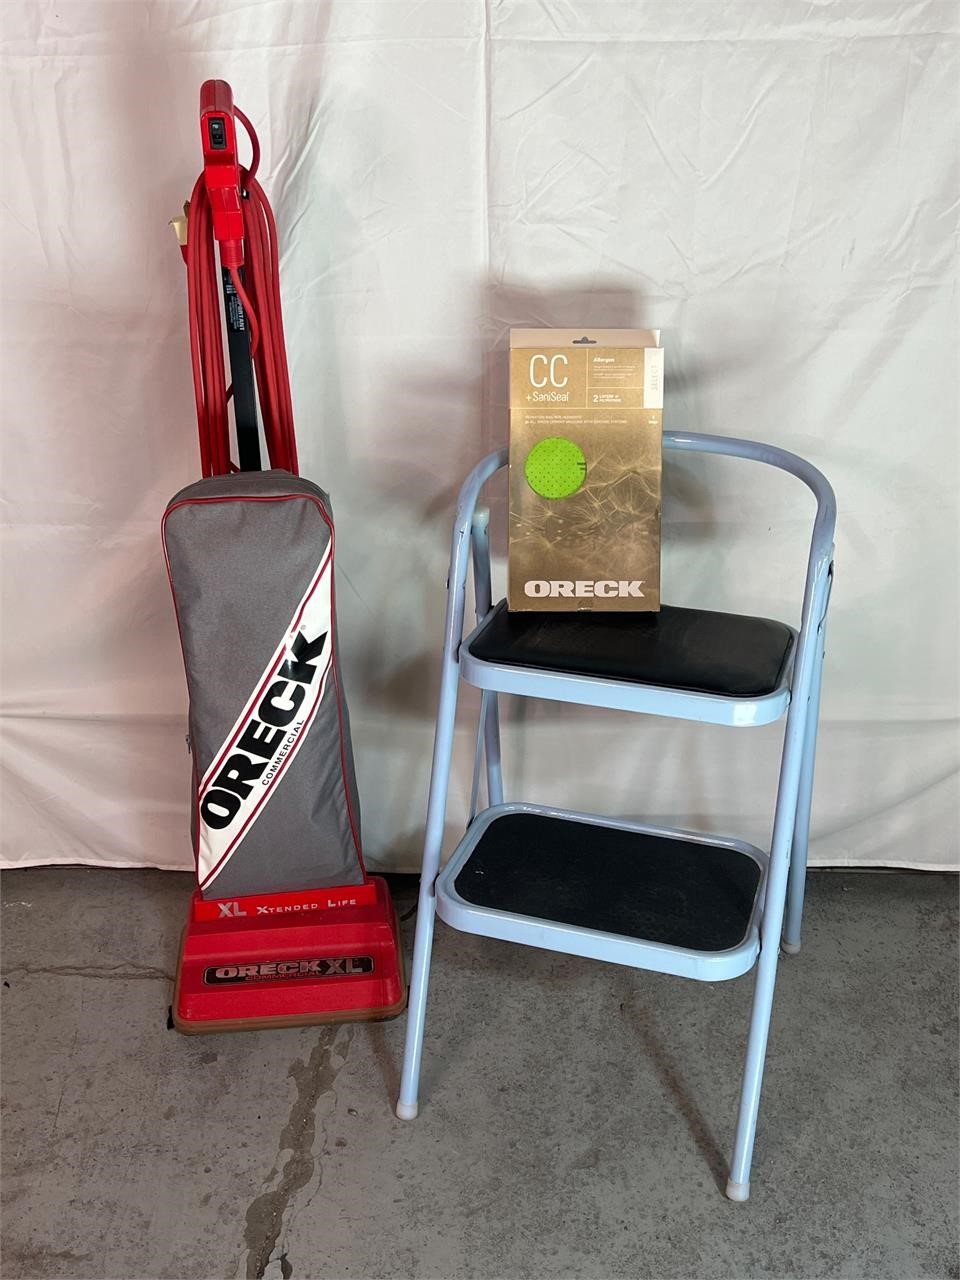 Oreck Vacuum, Vacuum Bags, & Step Ladder